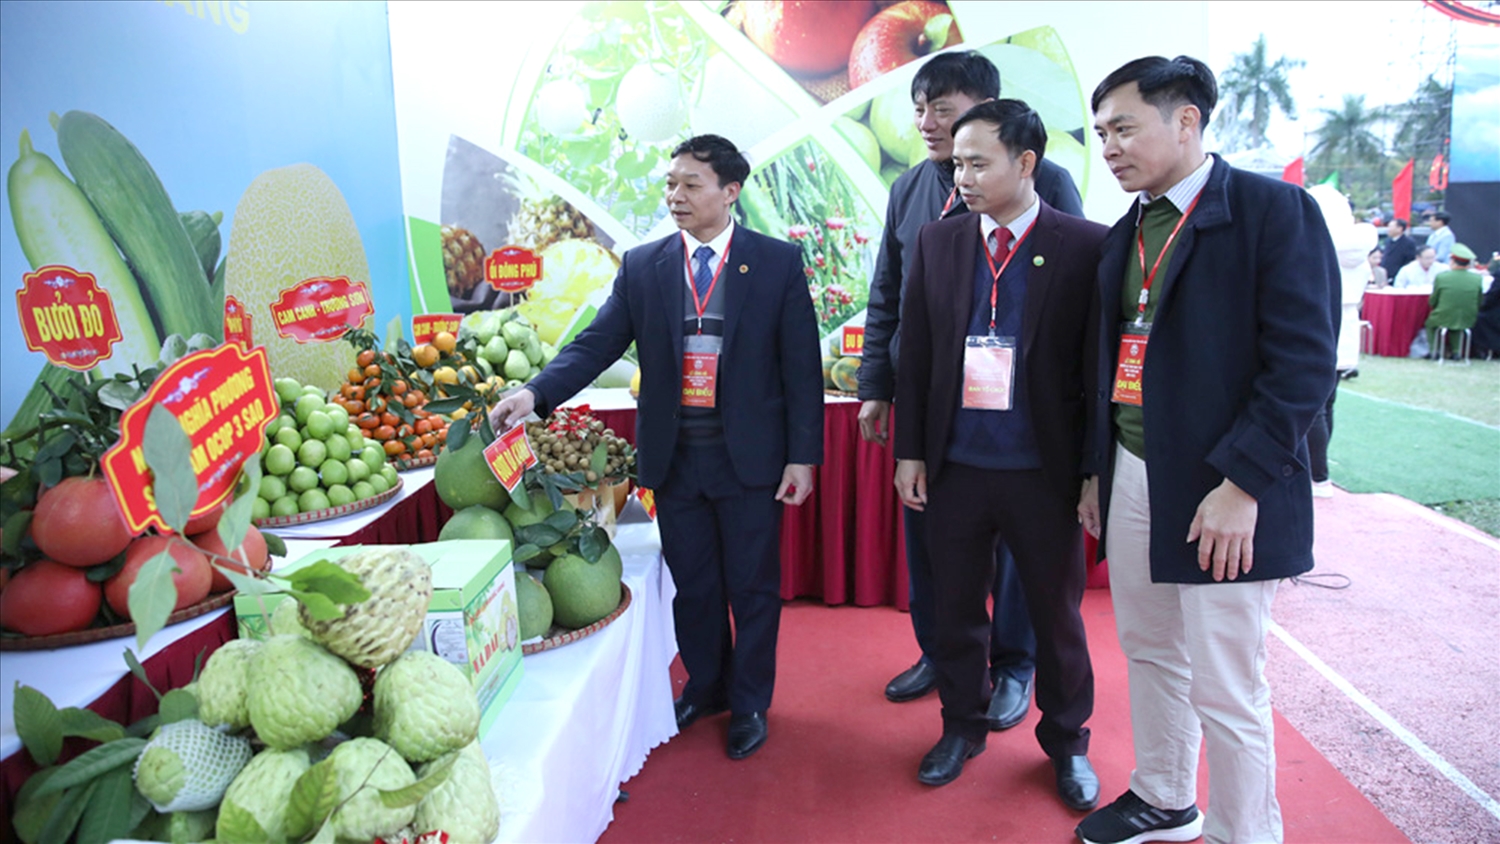 Các đại biểu thăm gian trưng bày các loại nông sản đặc trưng của địa phương